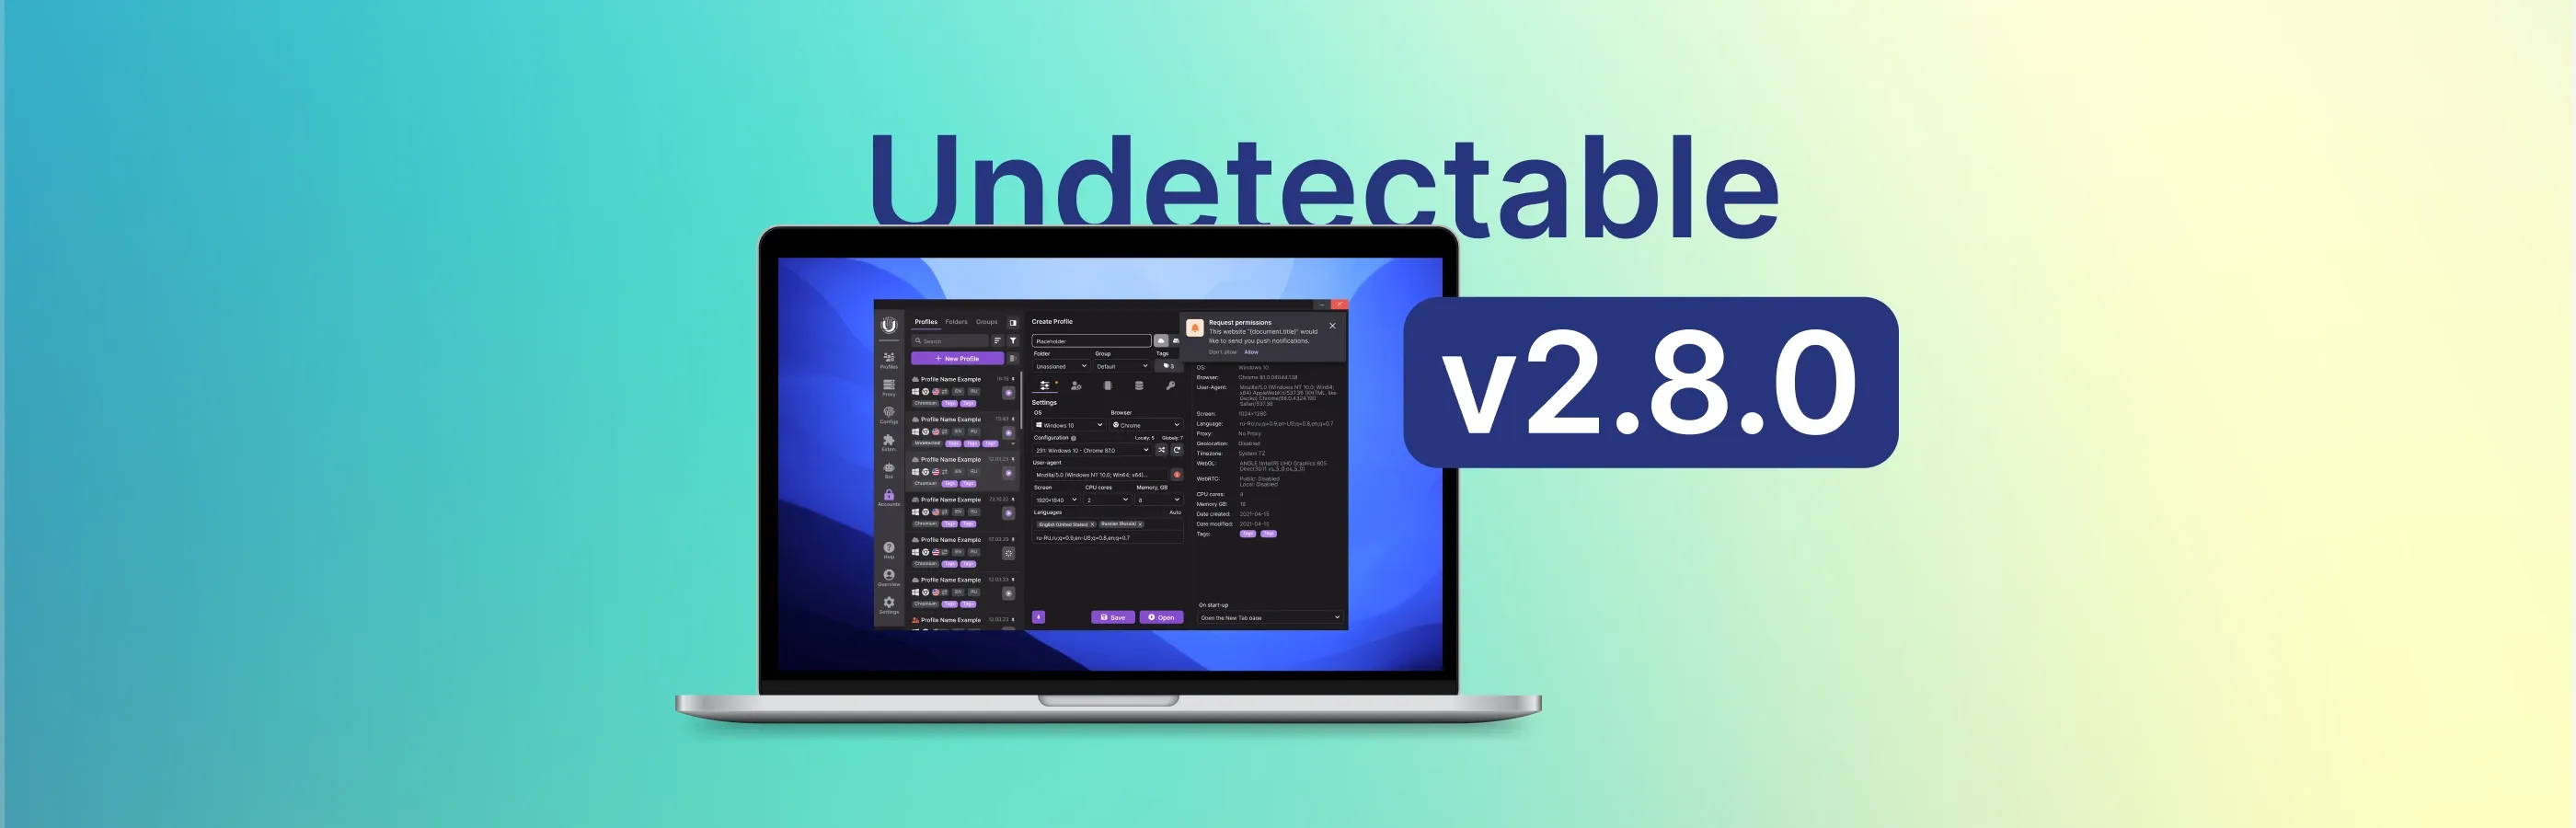 Cập nhật trình duyệt Undetectable 2.8.0: Chủ đề tối và các tính năng mới